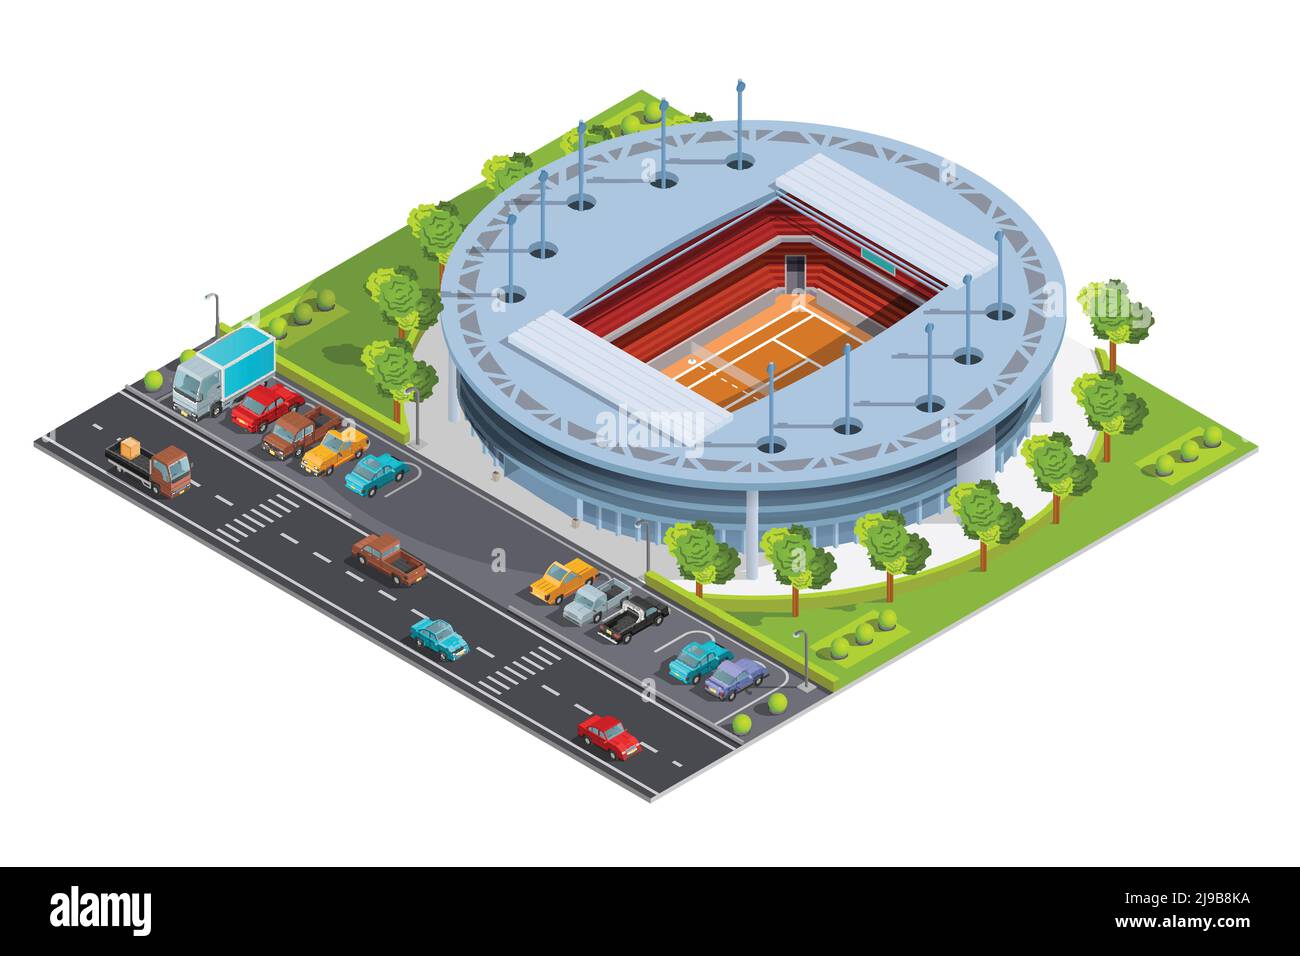 Complexe sportif de tennis avec stade ouvert pour l'entraînement des championnats et correspond à l'illustration vectorielle abstraite de la bannière isométrique Illustration de Vecteur